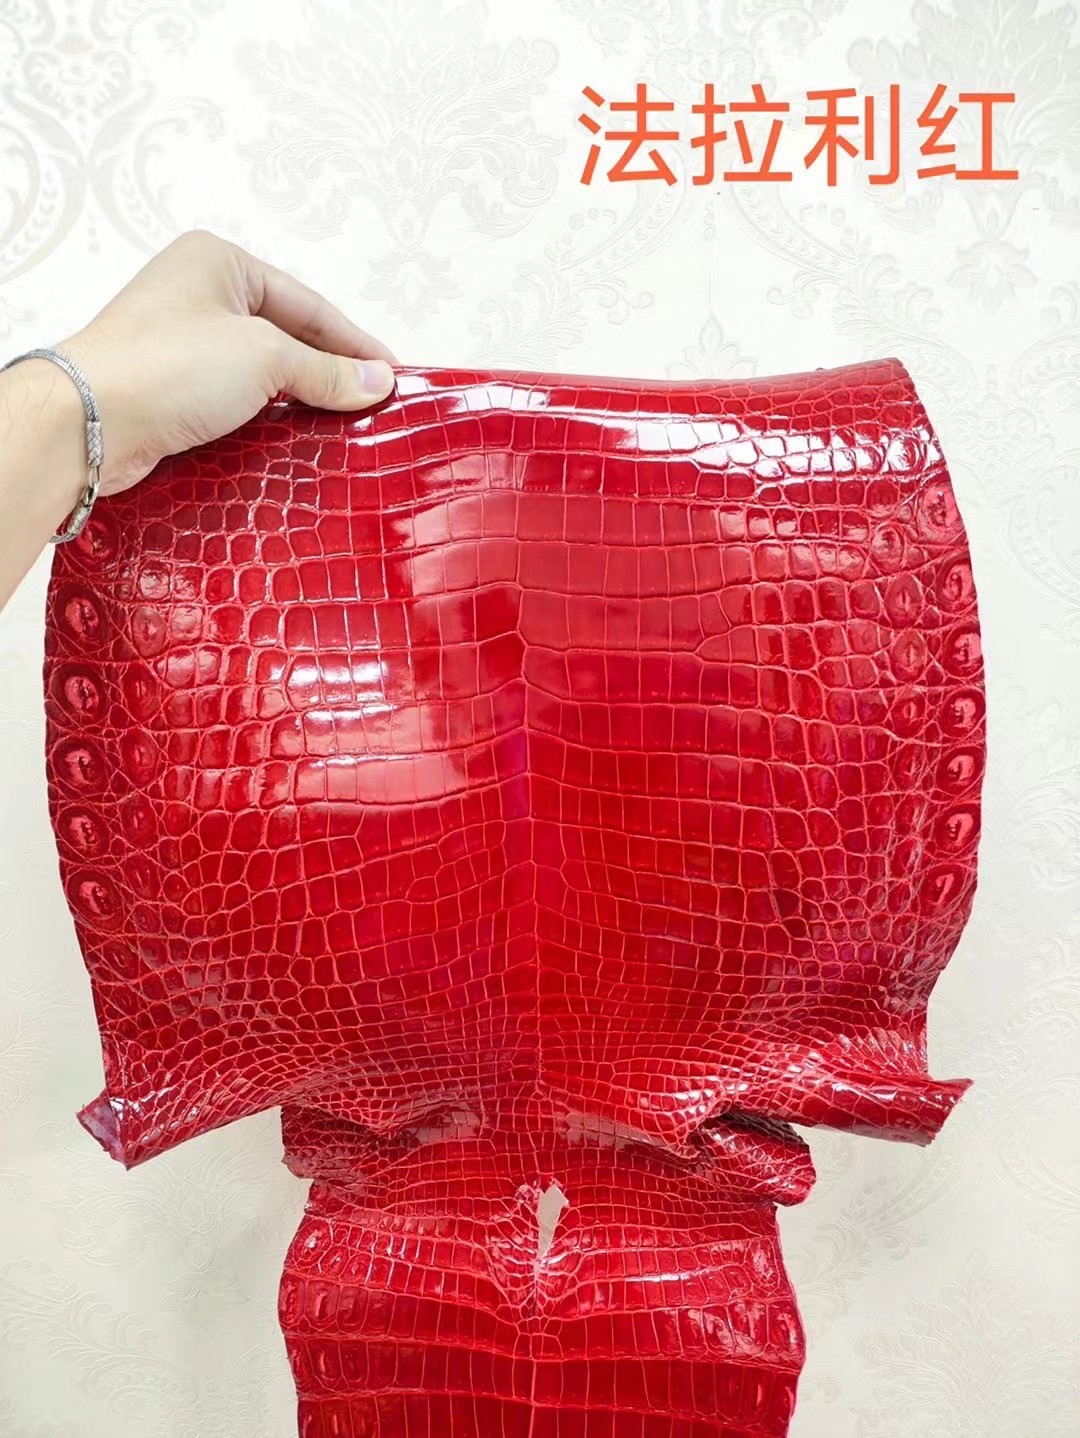 Shebag New comming Hermes bag leathers（2023 Week 51）-ร้านค้าออนไลน์กระเป๋า Louis Vuitton ปลอมคุณภาพดีที่สุด, กระเป๋าออกแบบจำลอง ru